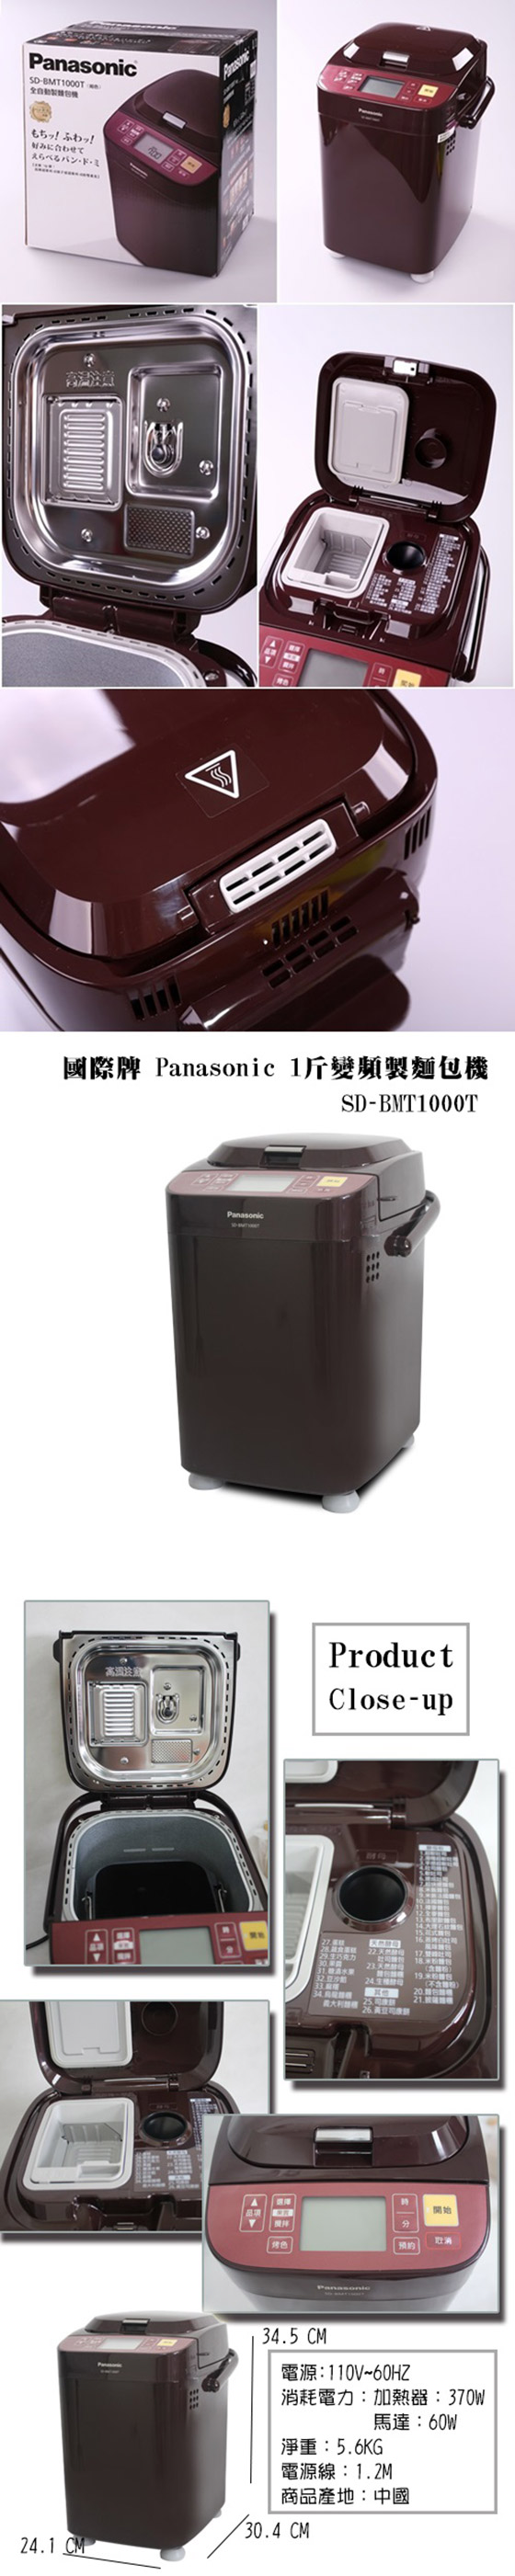 國際牌 Panasonic/全自動變頻/製麵包機/SD-BMT1000T